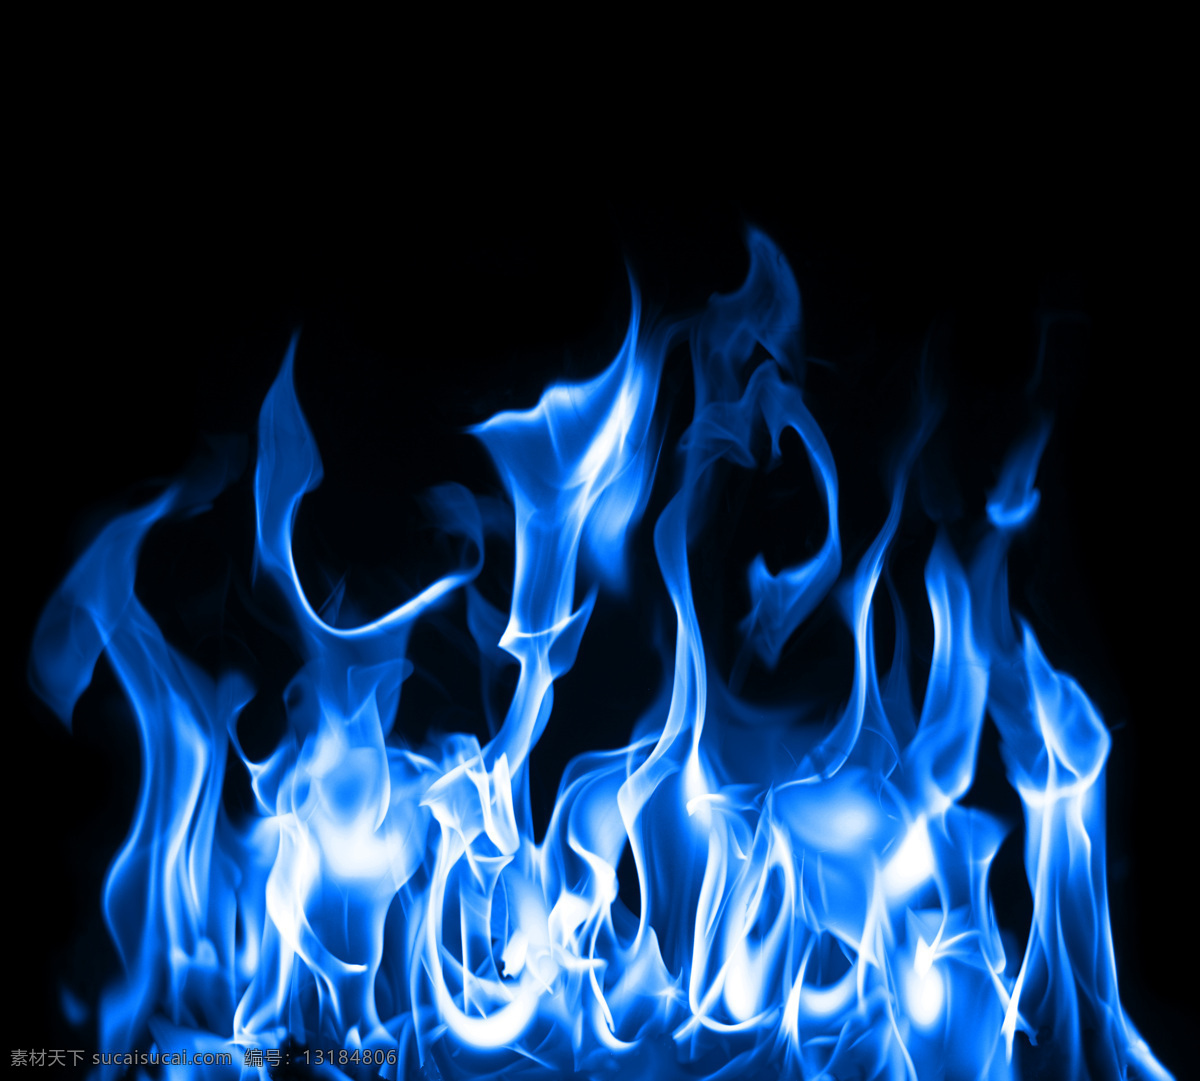 蓝色 火焰 火苗 蓝色火焰 燃烧 火焰图片 生活百科